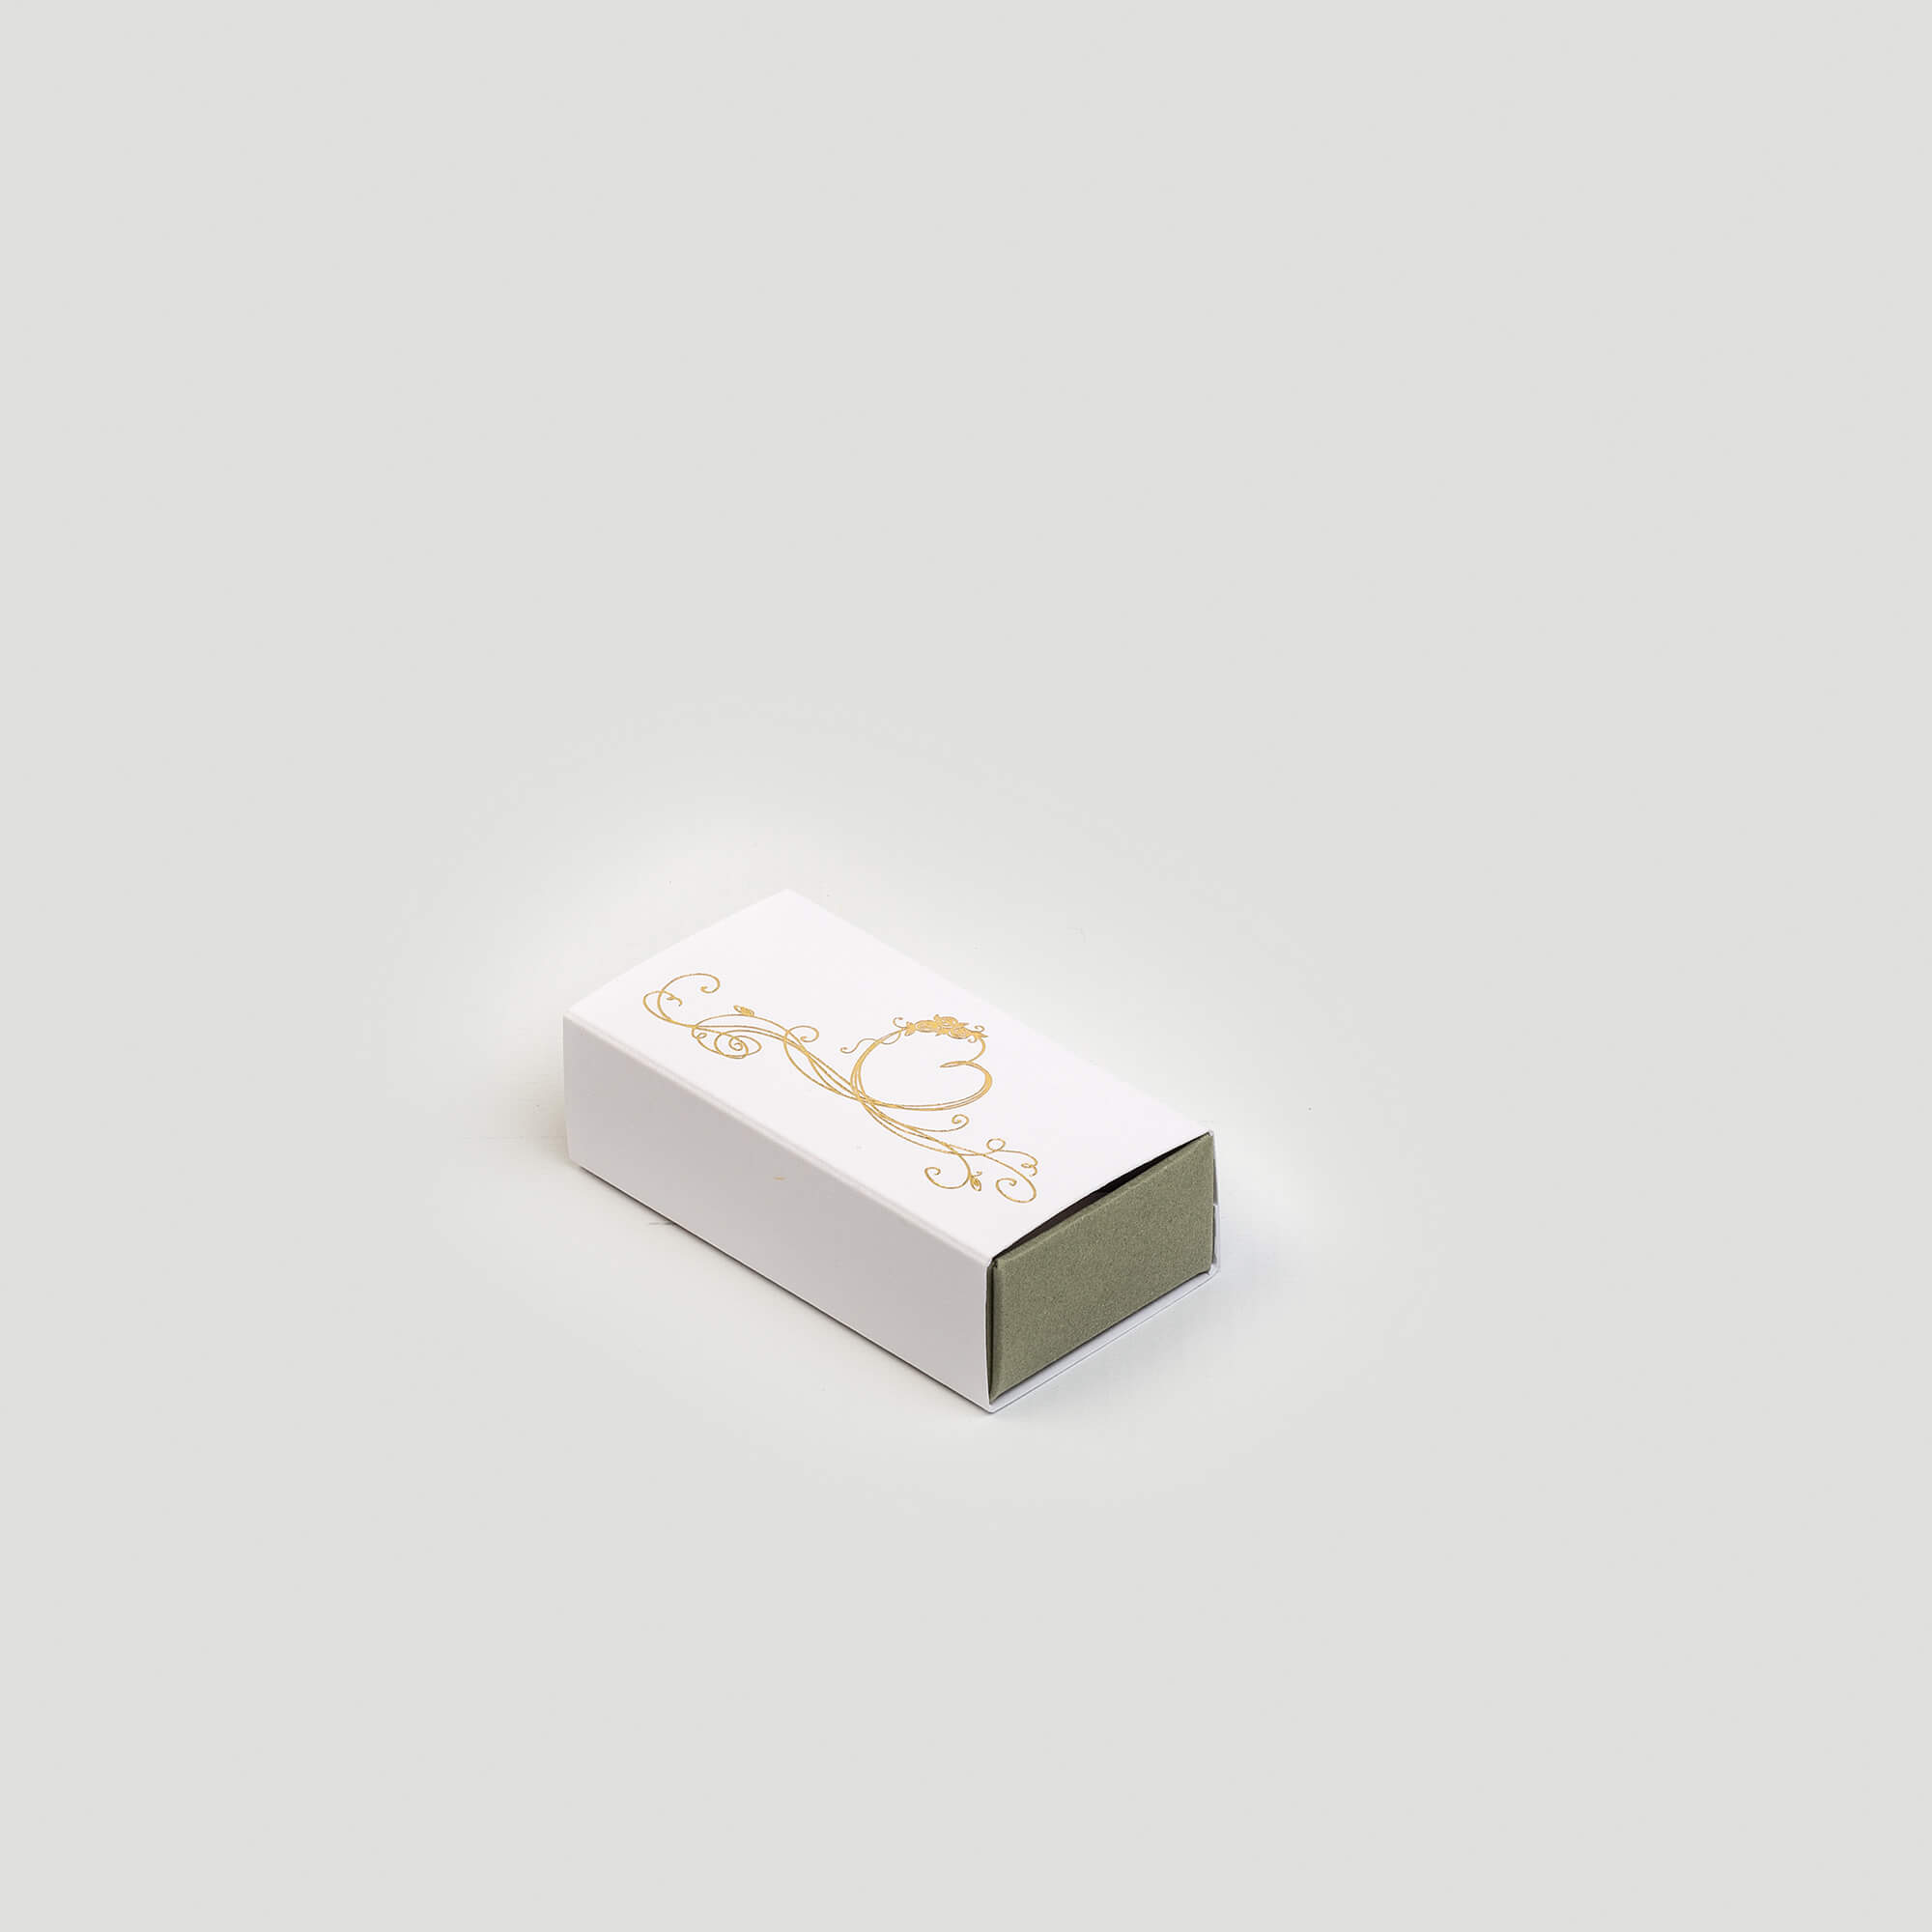 Boîte tiroir pour dragées, 40x75x23, intérieur couleur vert, extérieur couleur blanc, impression dorée